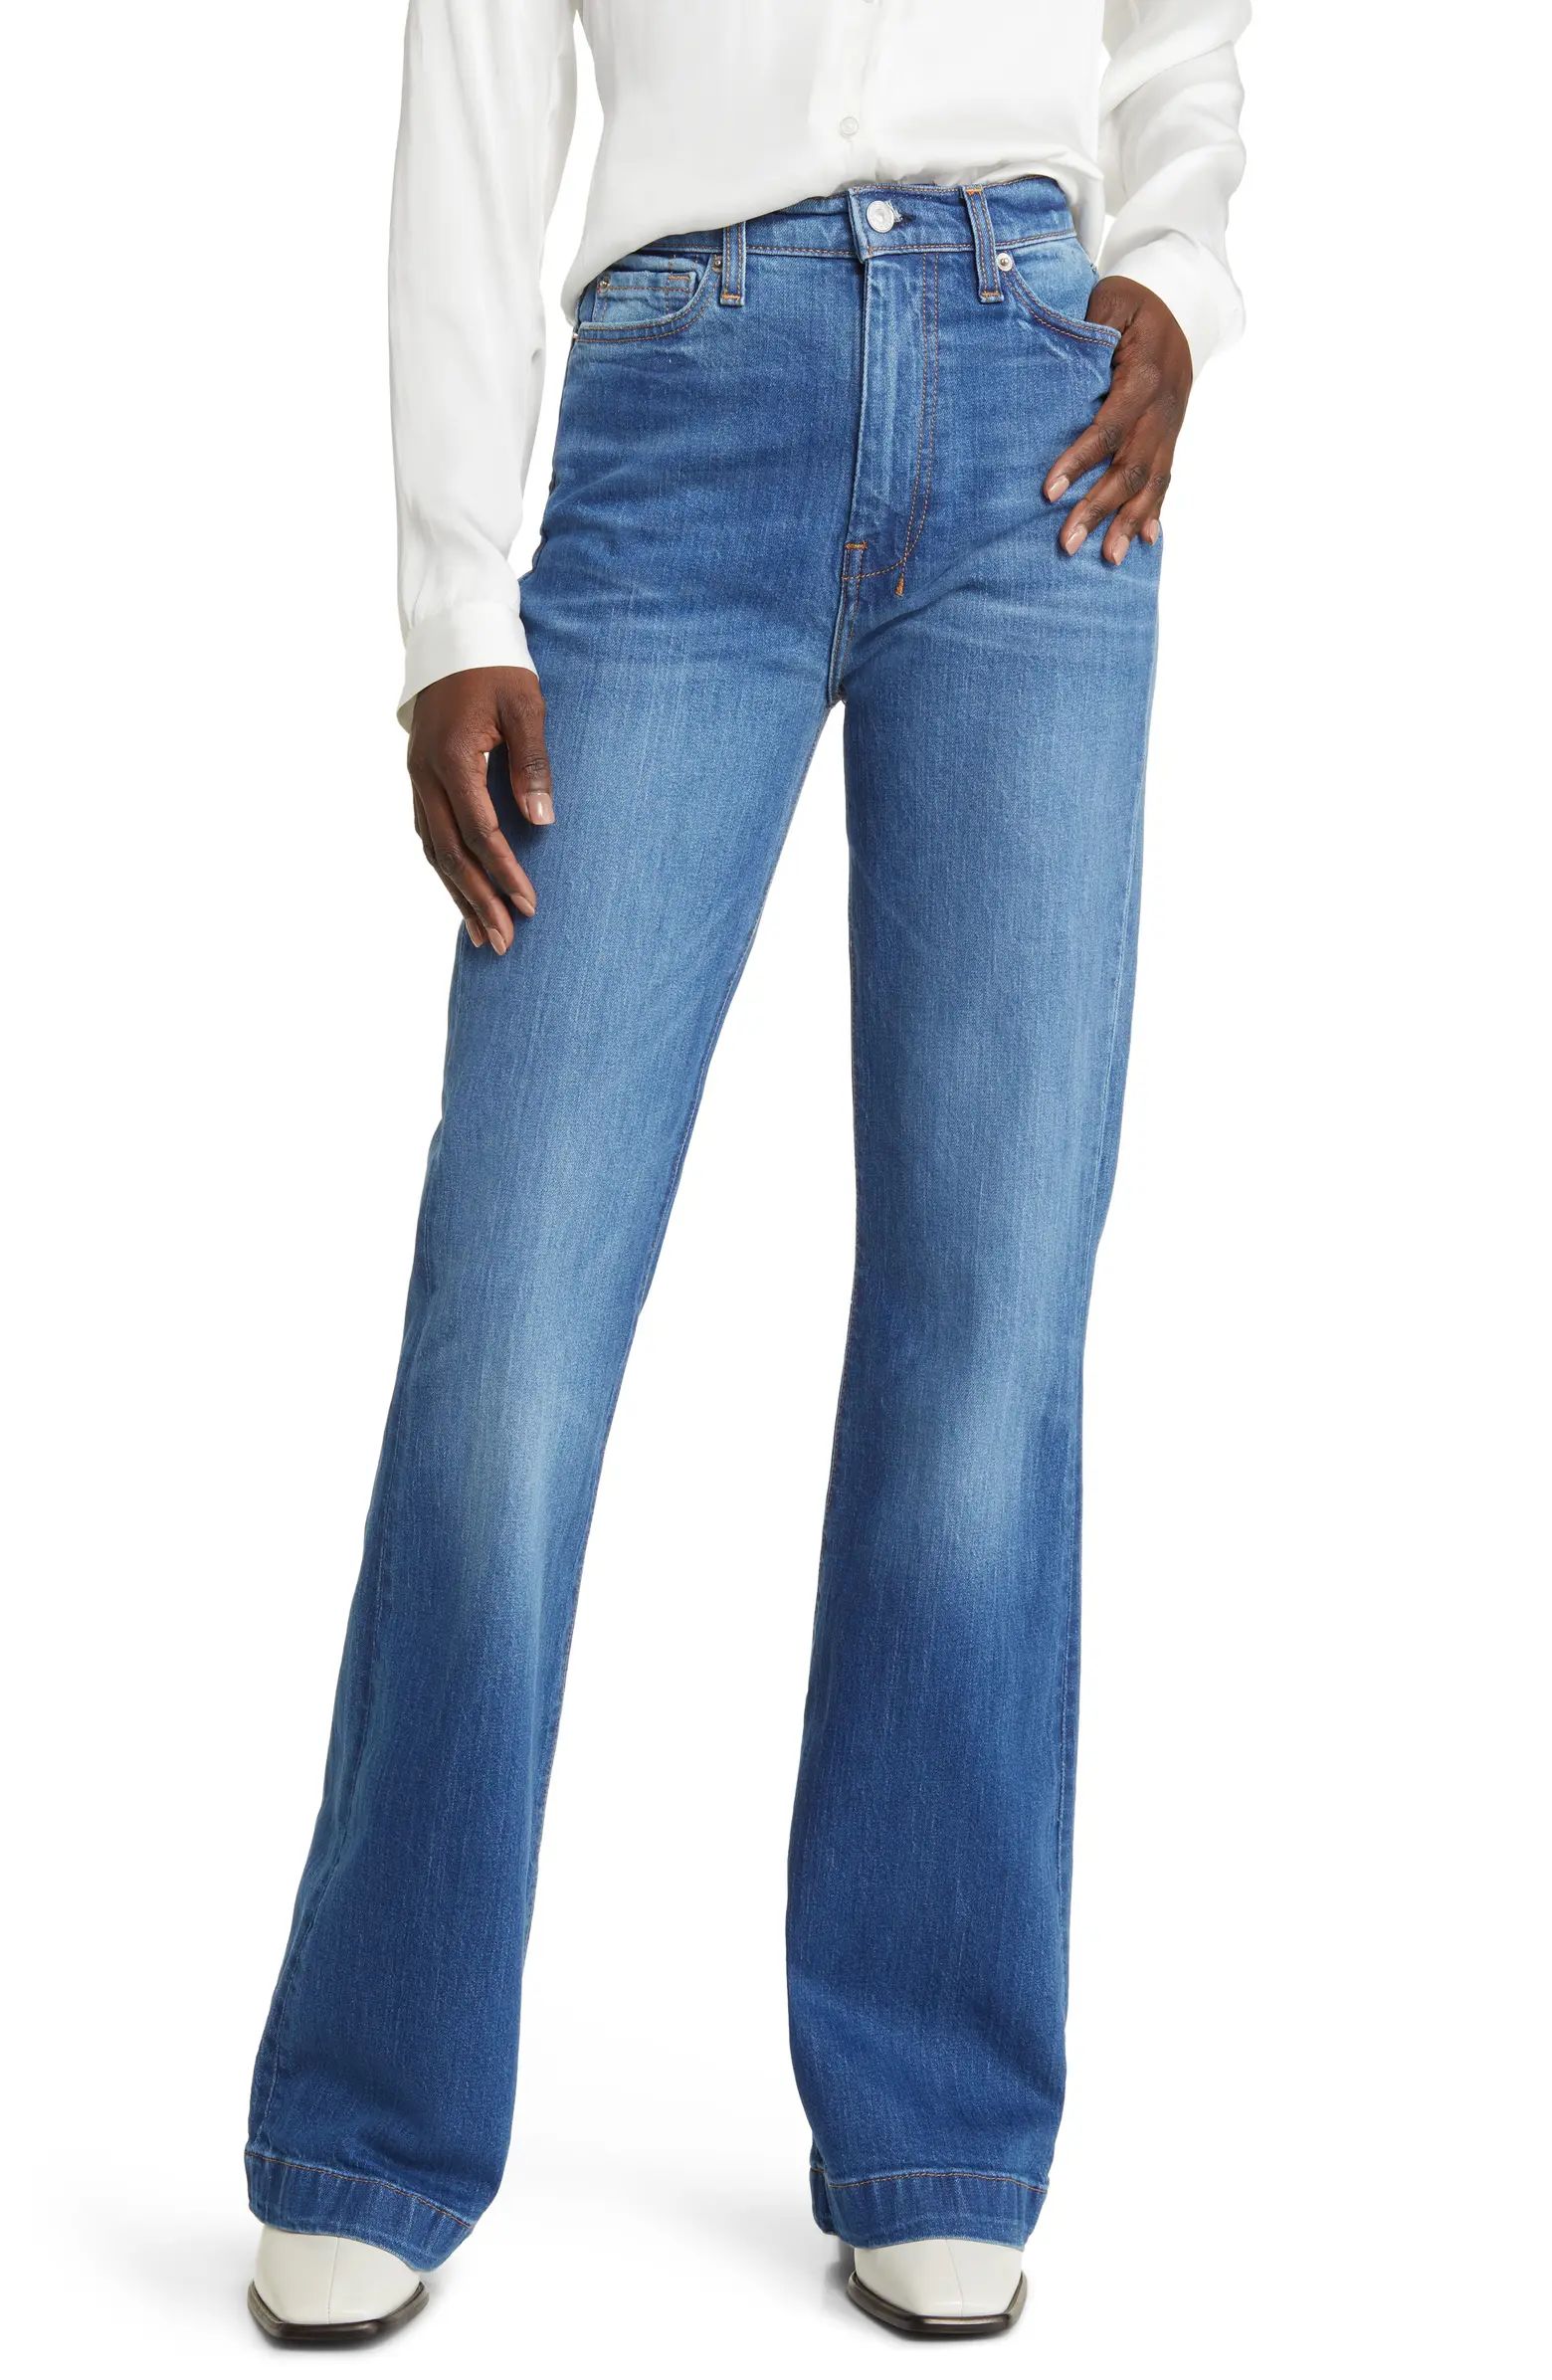 Dojo Ultrahigh Waist Flare Leg Jeans | Nordstrom